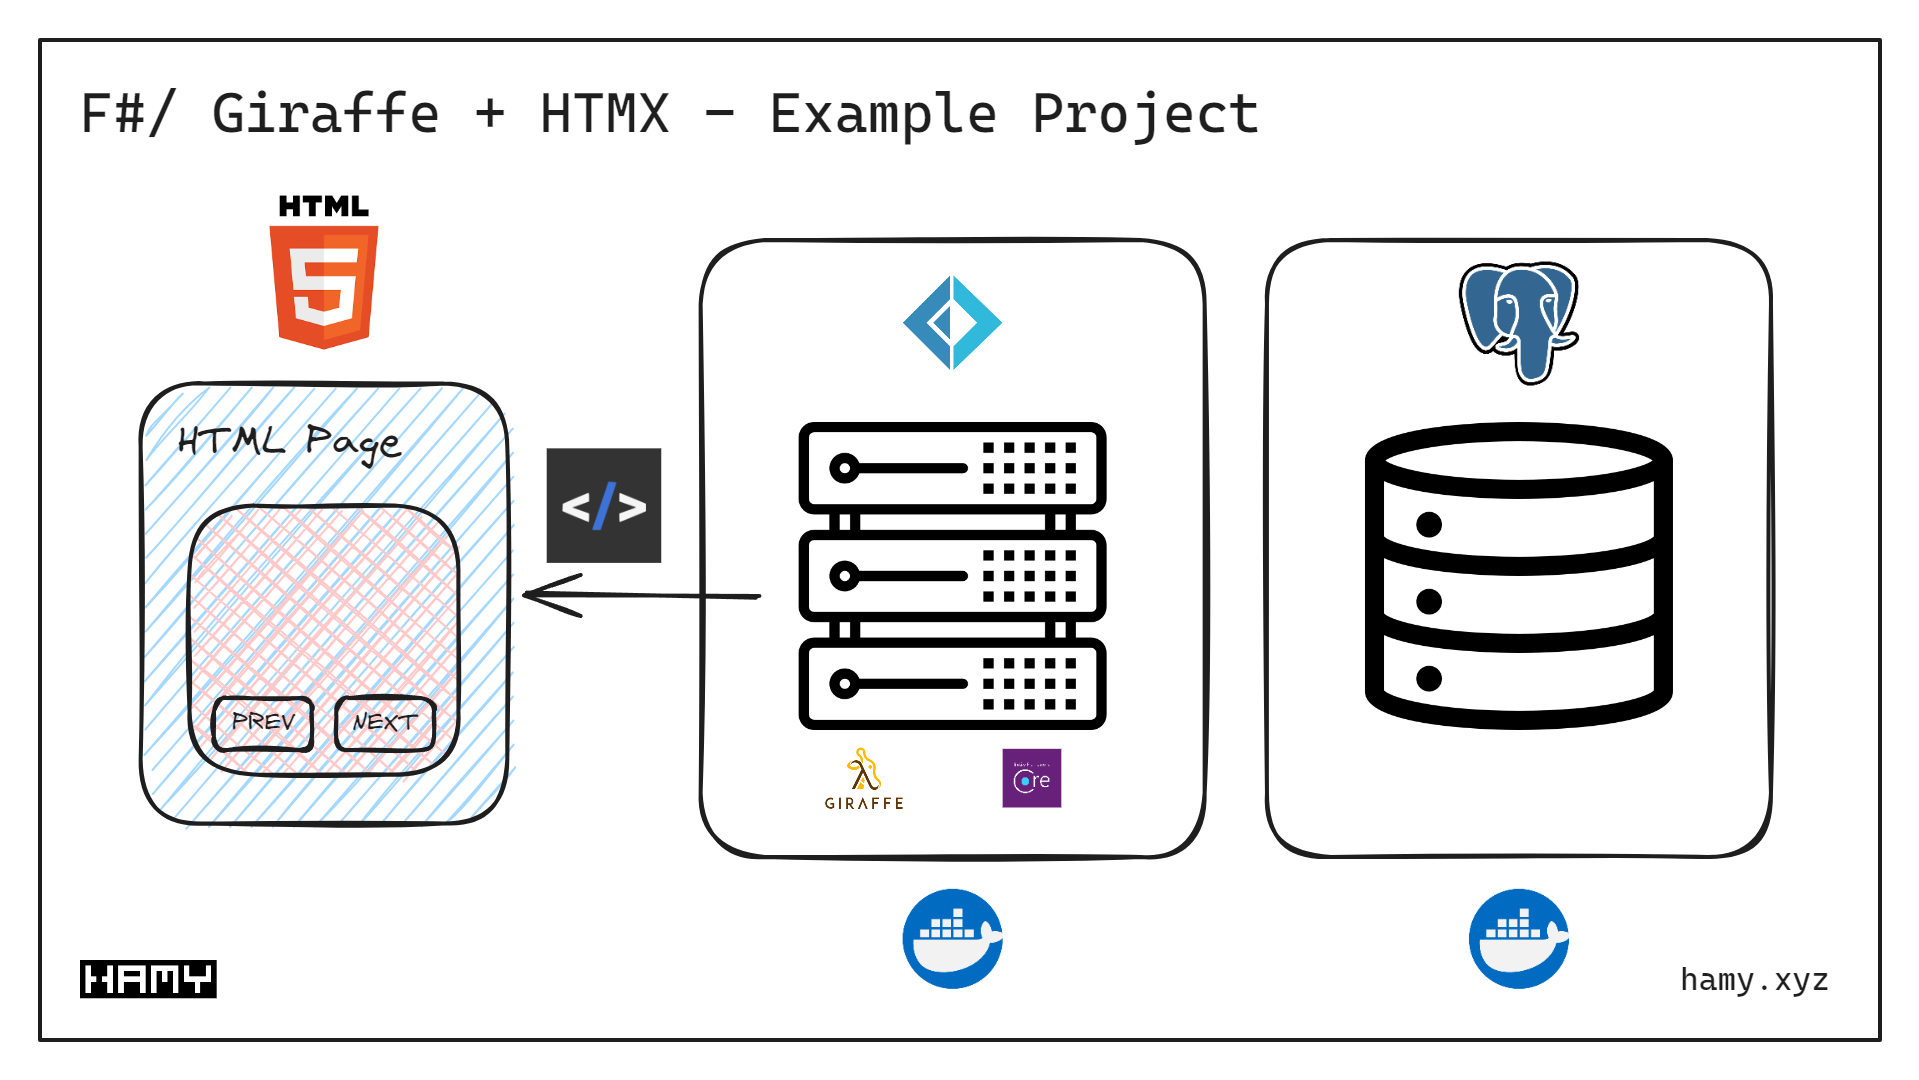 F# / Giraffe + HTMX - Example App